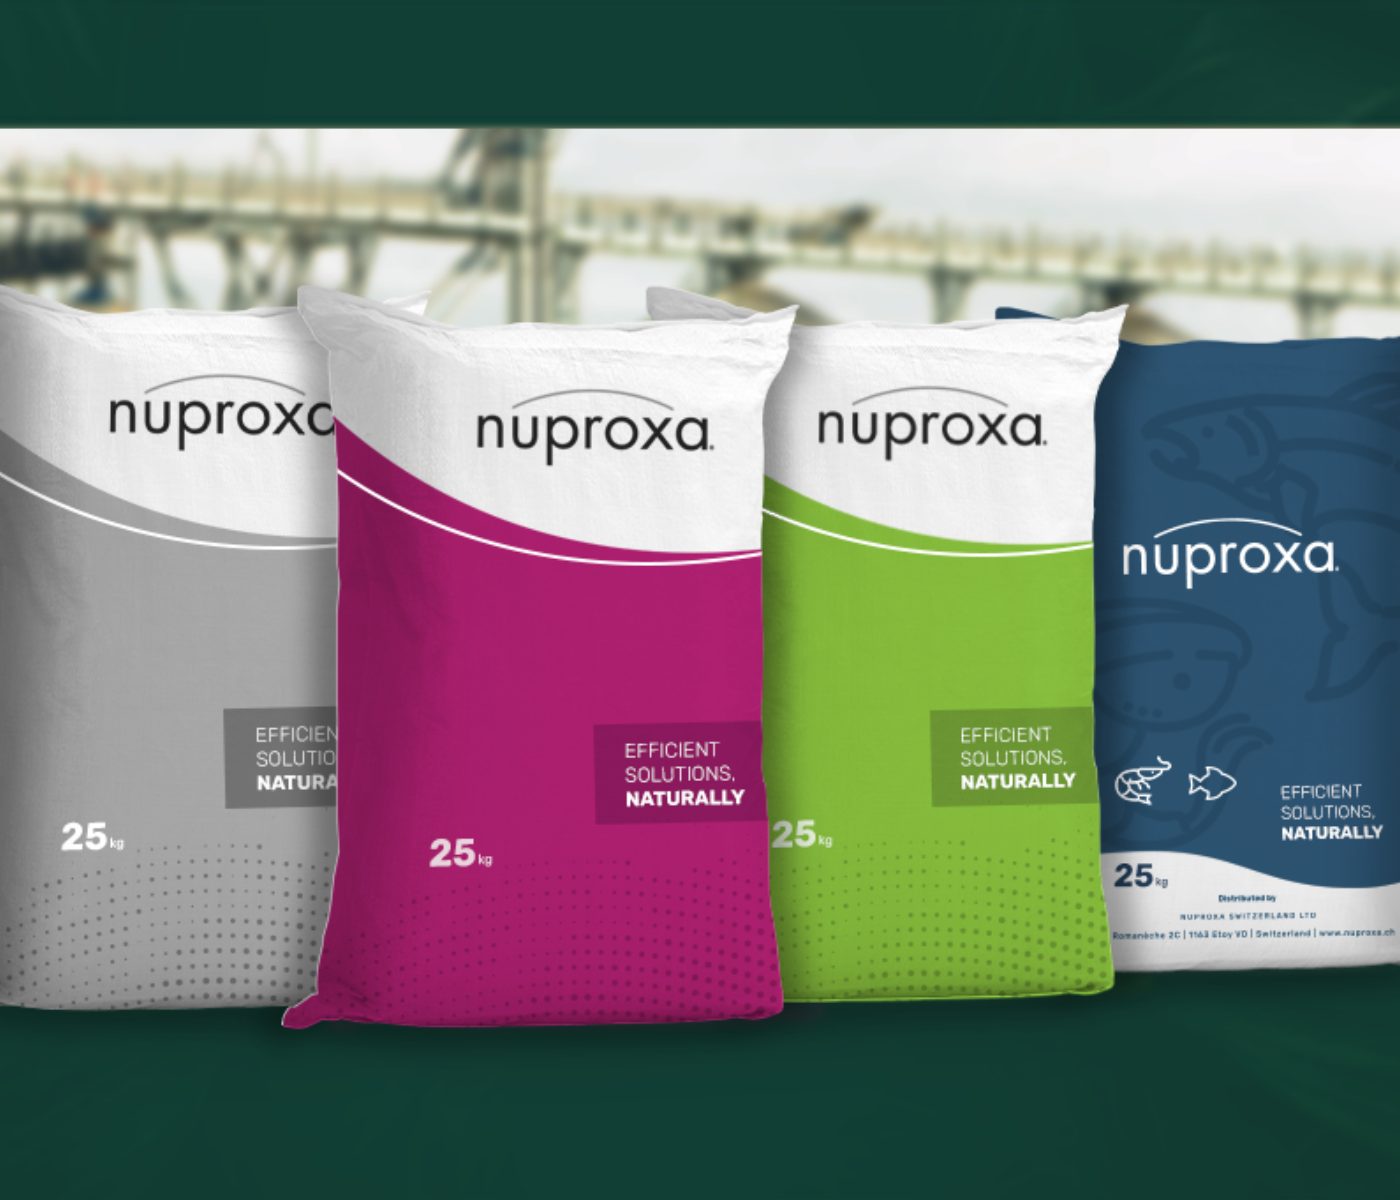 Nuproxa lança no Brasil sua Linha de Produtos para Nutrição Animal